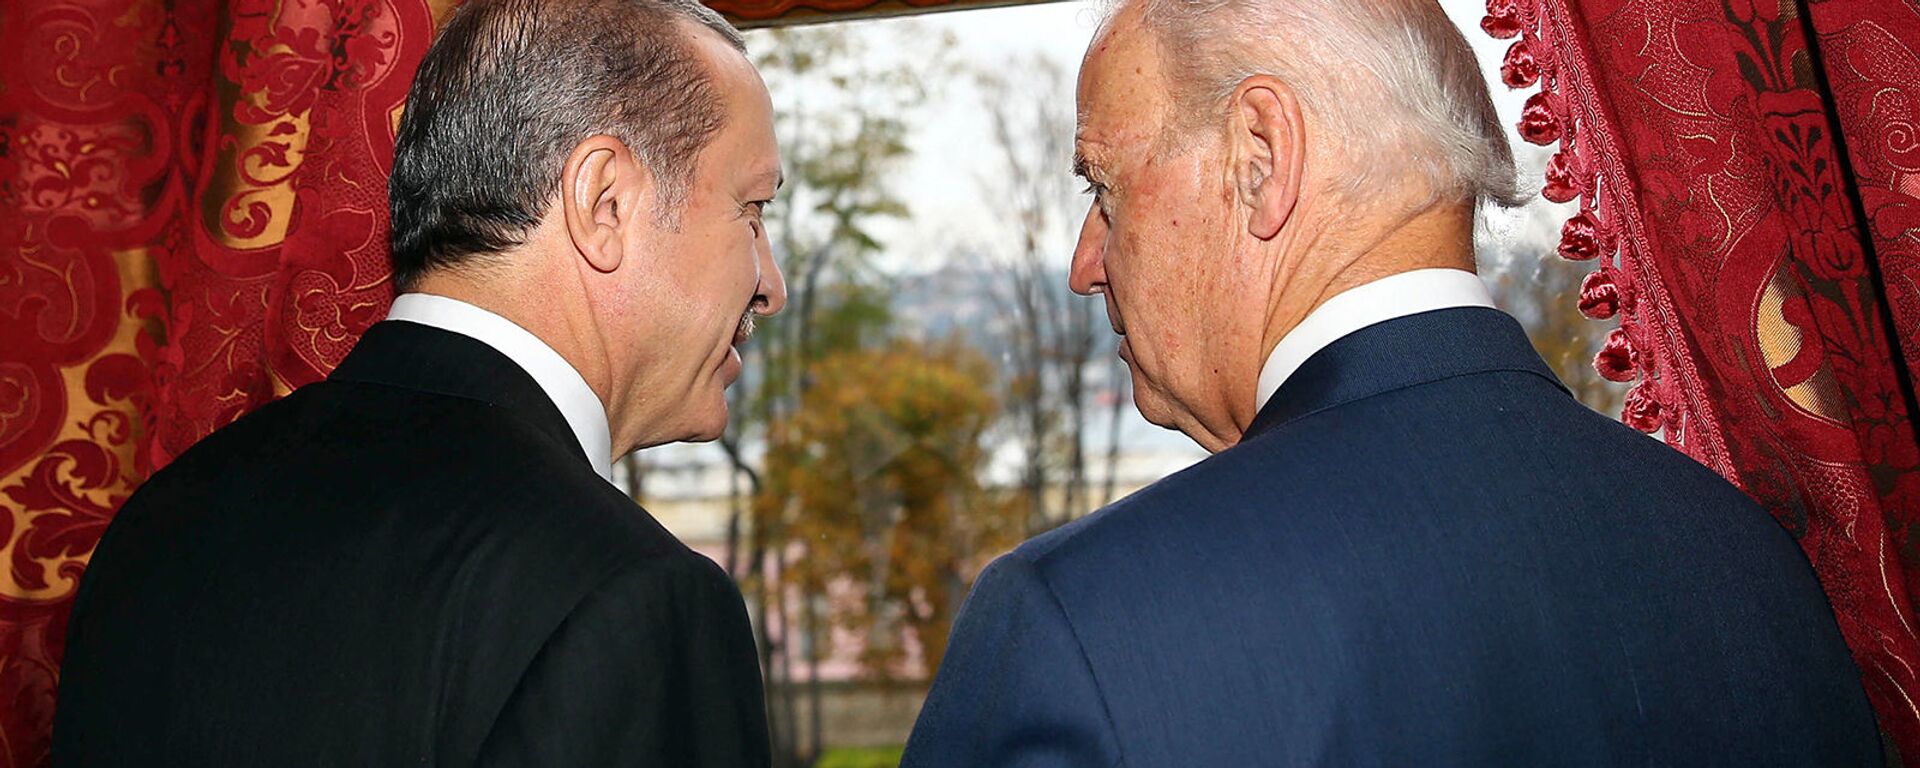 Беседа вице-президента США Джо Байдена с президентом Турции Реджепом Эрдоганом во дворце Бейлербейи (22 ноября 2014).  Стамбул - Sputnik Армения, 1920, 05.06.2021